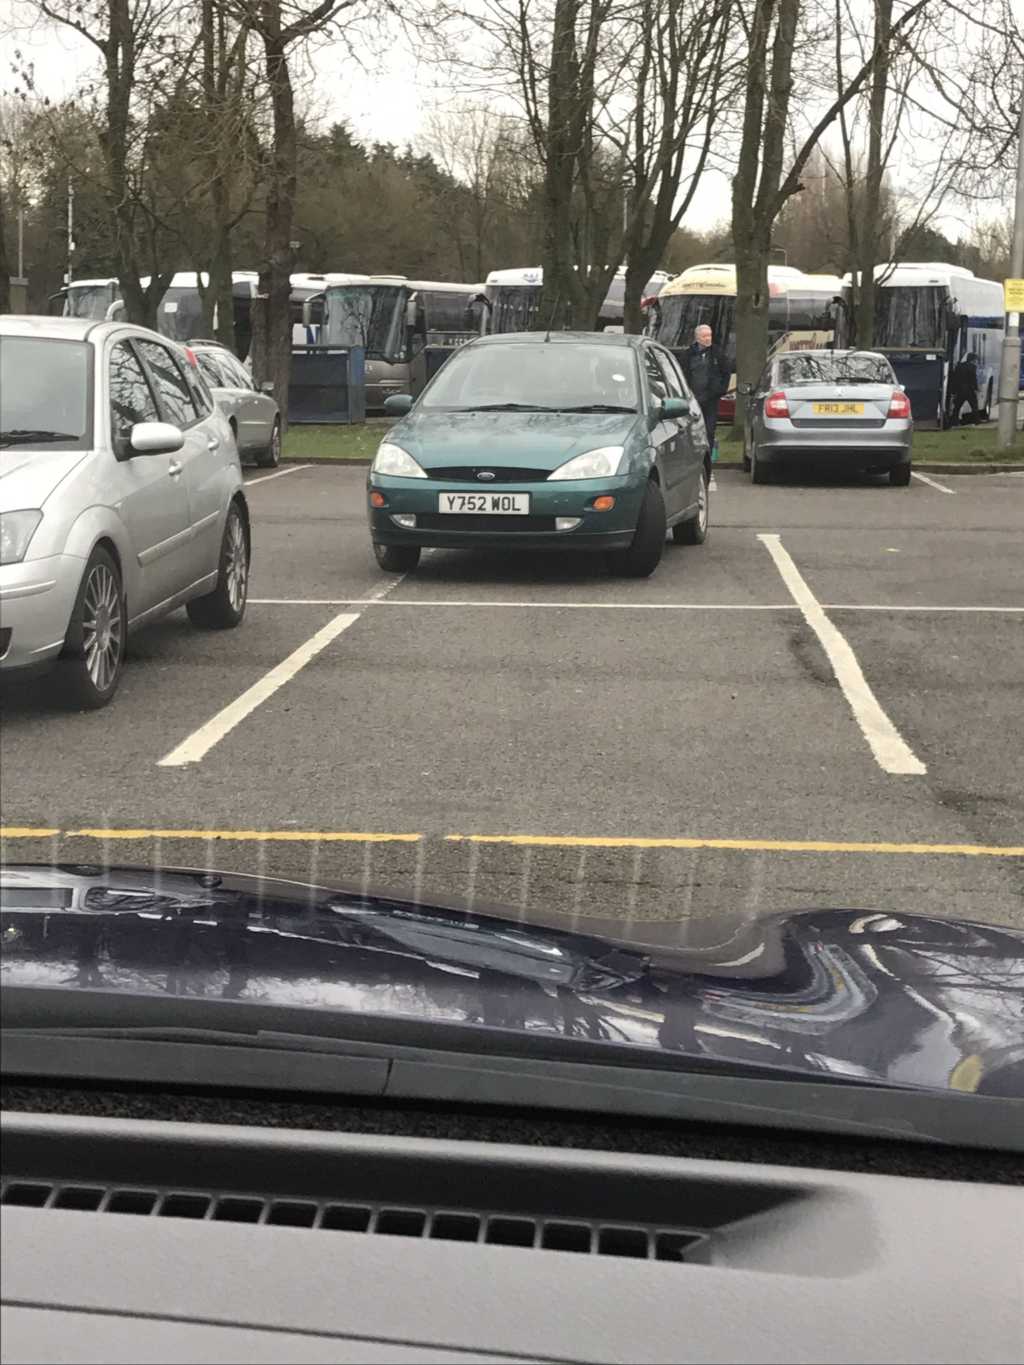 Y752 WOL displaying Selfish Parking